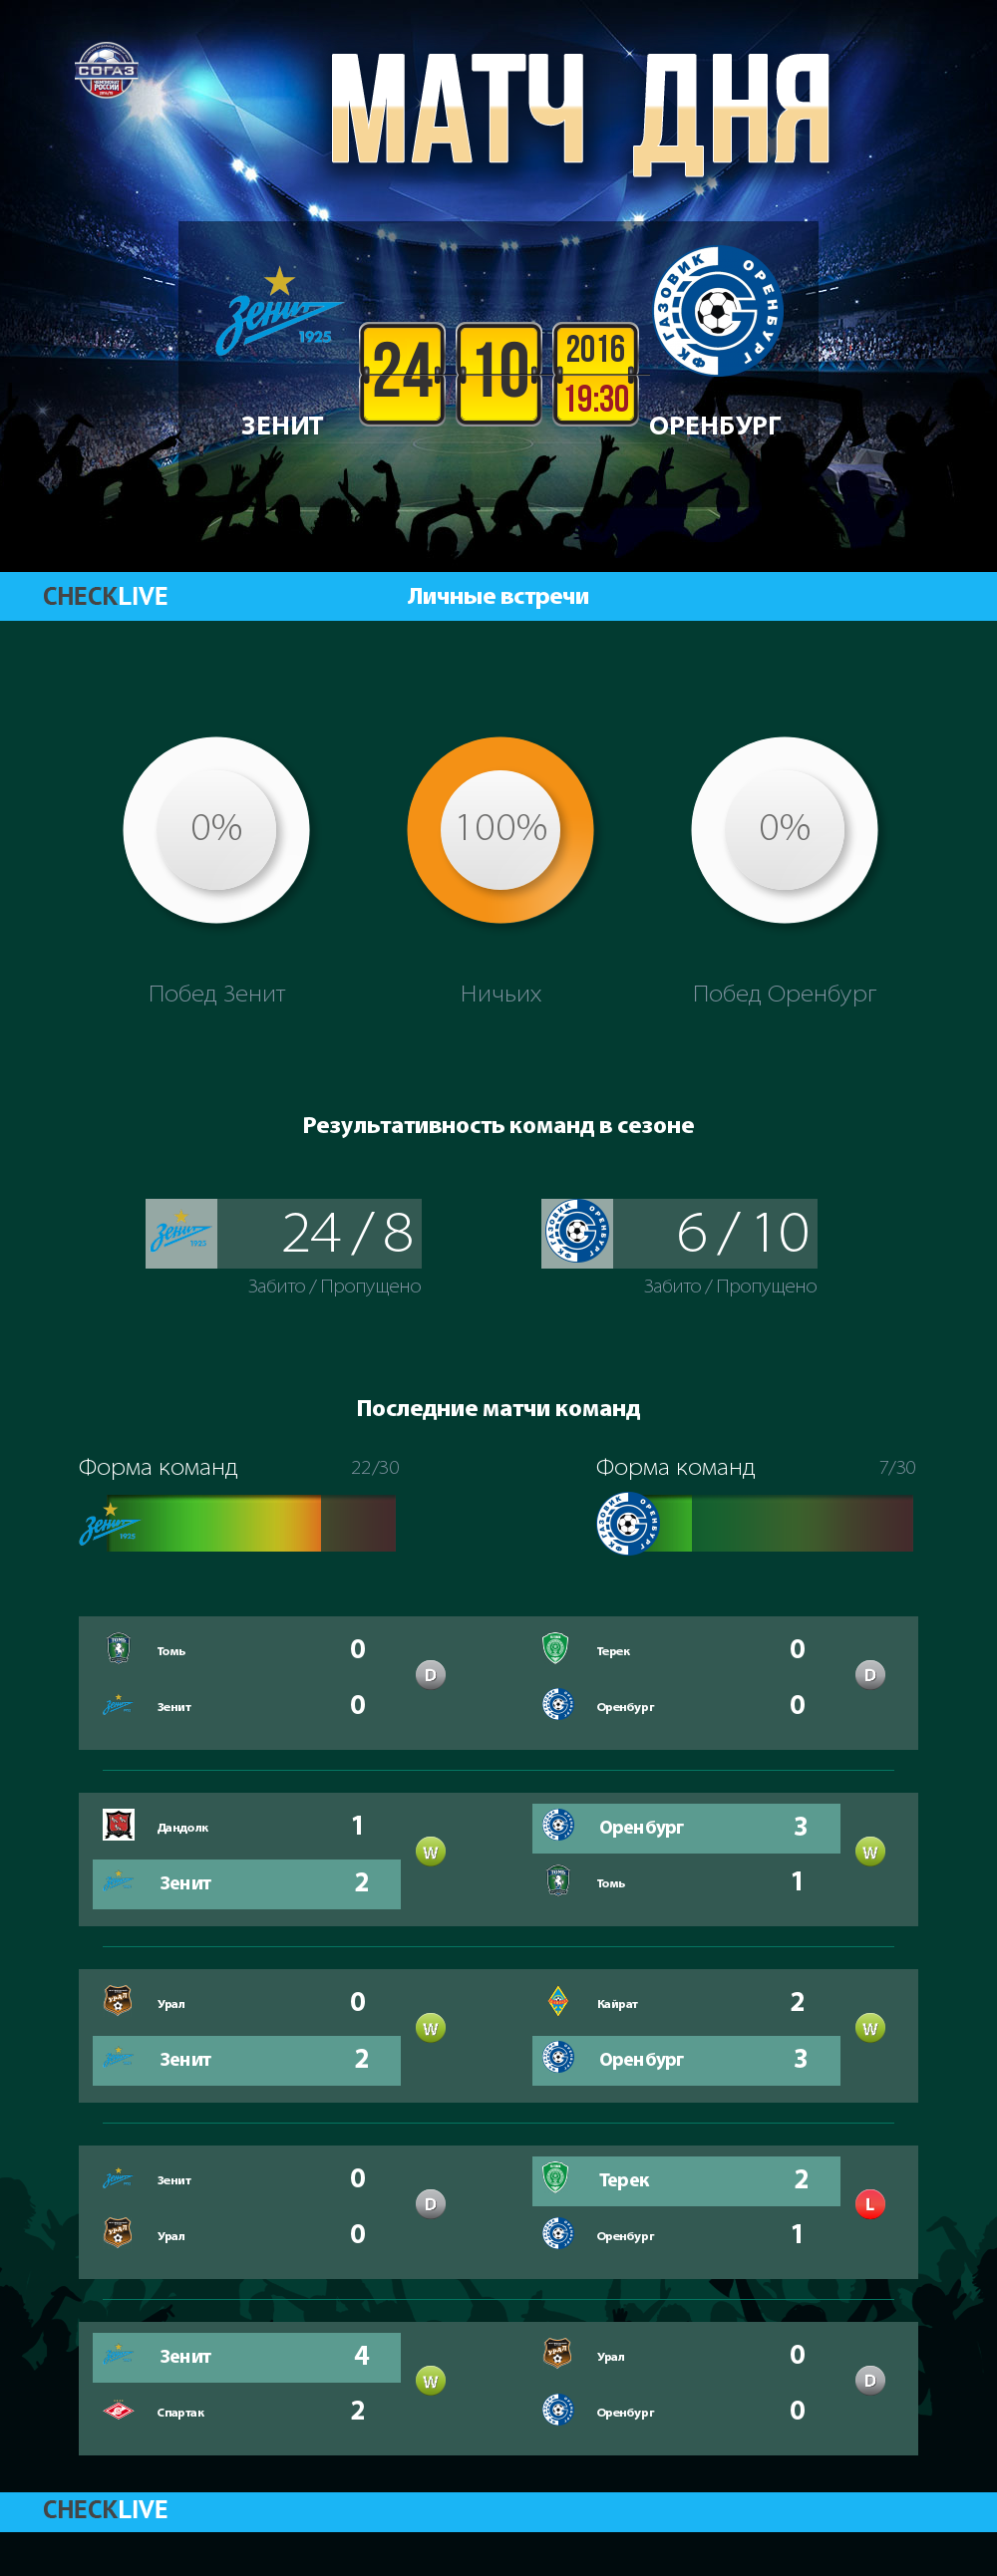 Инфографика Зенит и Оренбург матч дня 24.10.2016